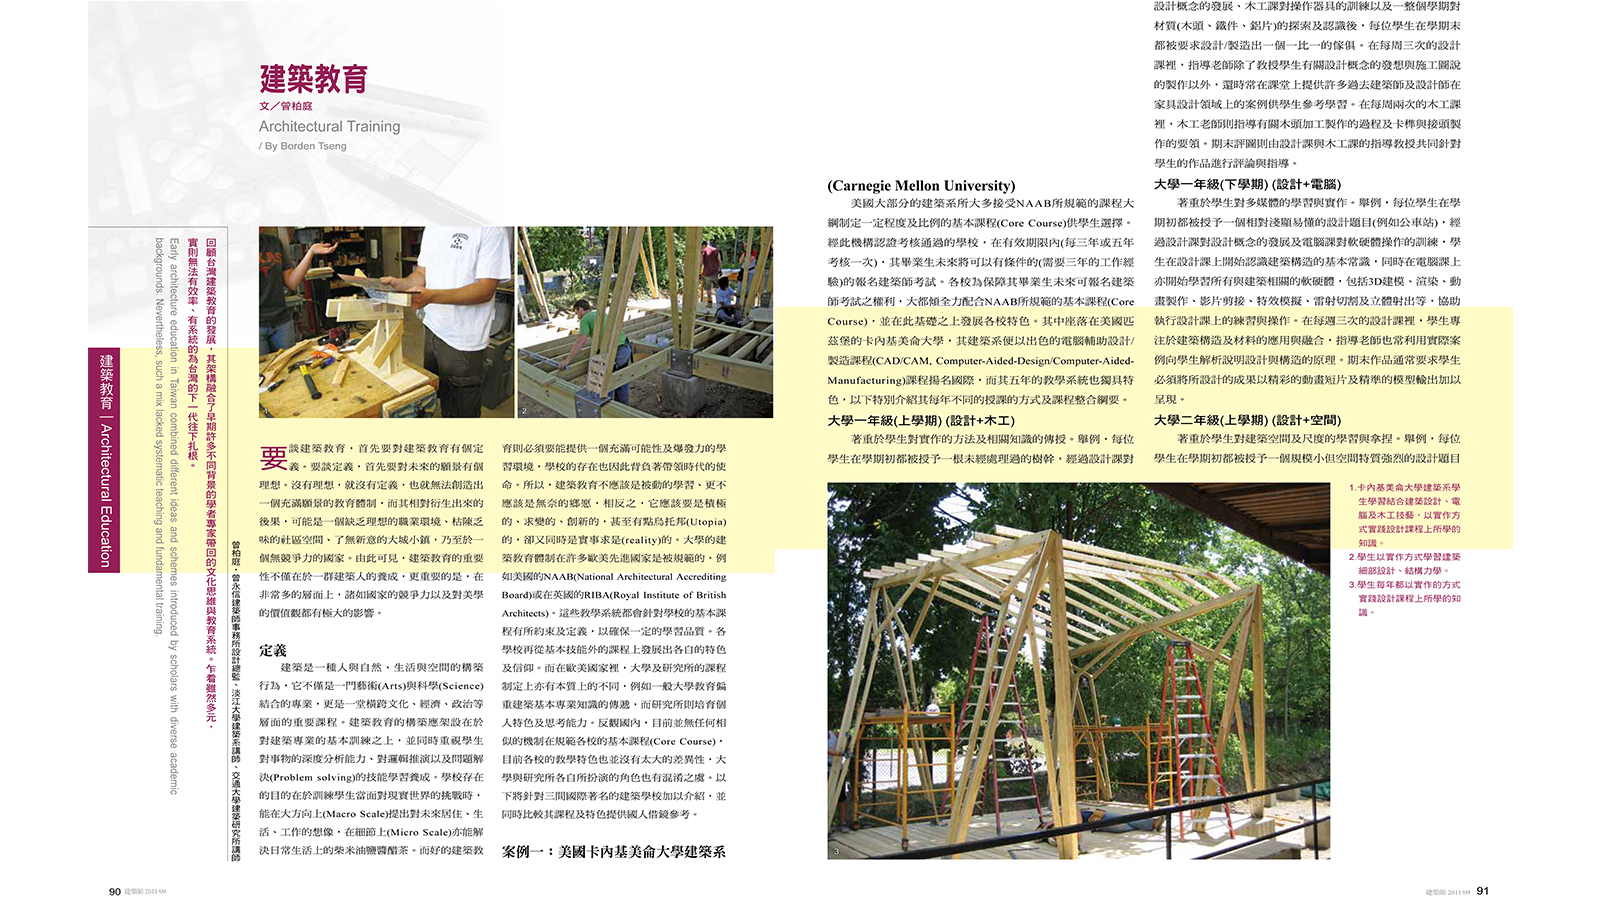 2011-09-建築師雜誌-02.jpg